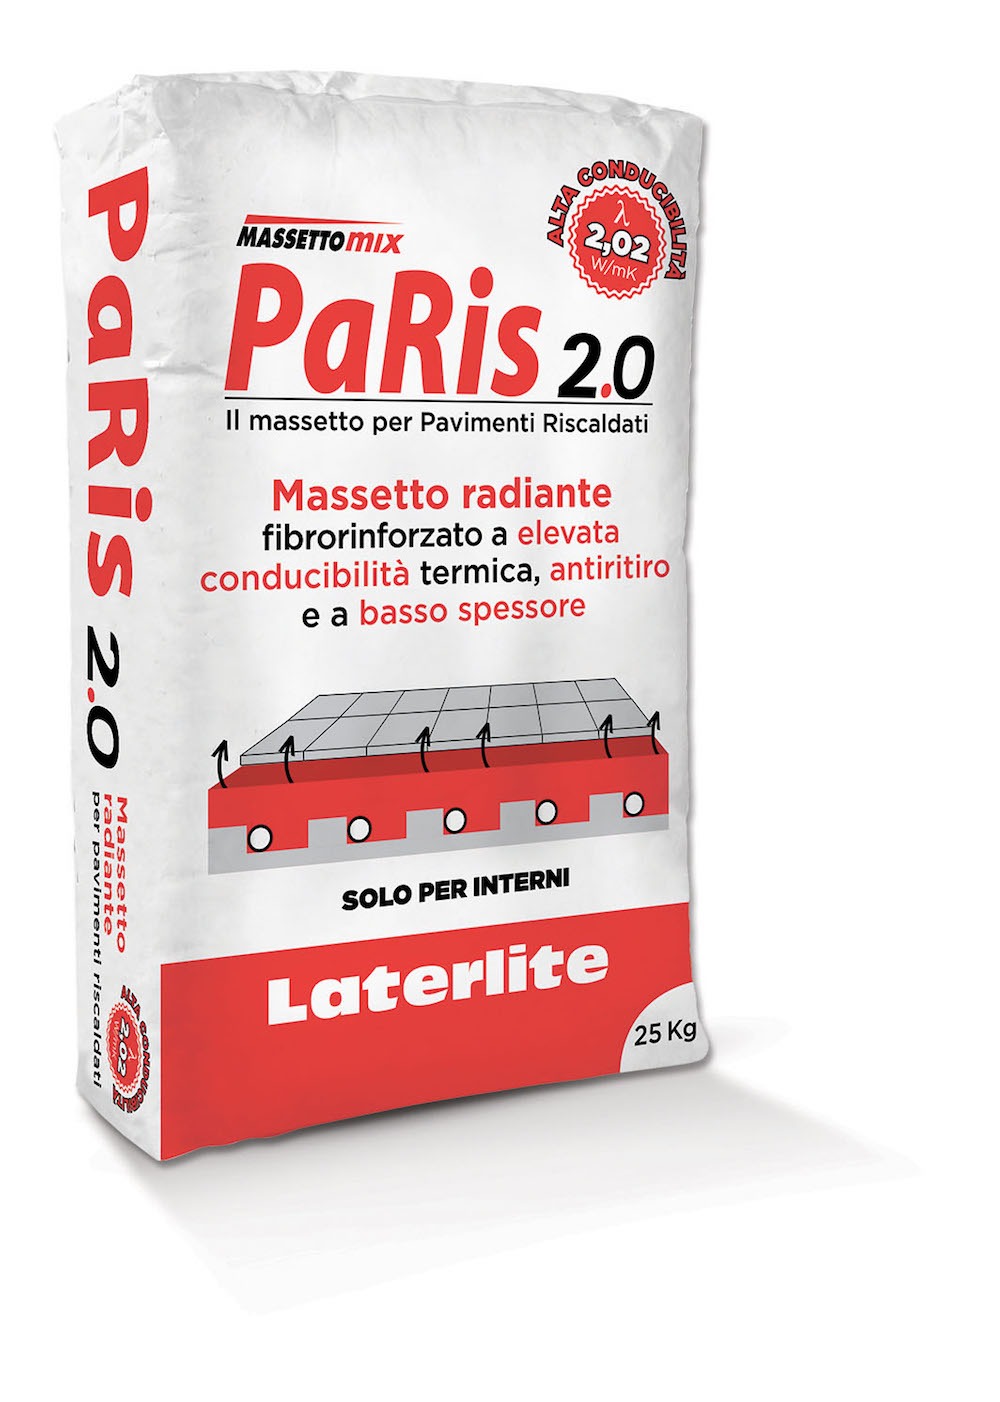 PaRis 2.0 Laterlite